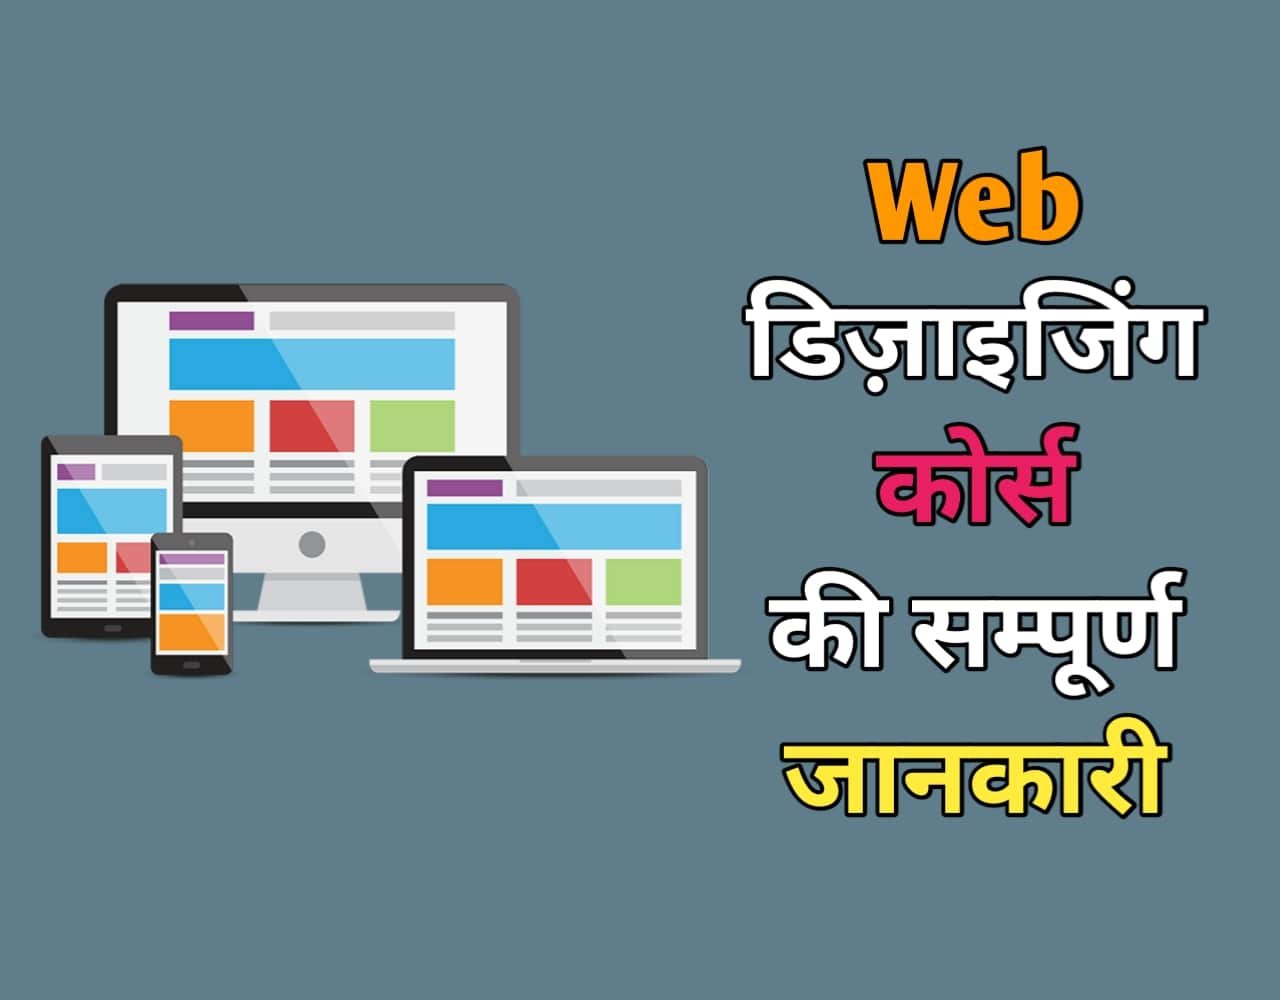 Web Designing Course Details in Hindi | वेब डिजाईनिंग कोर्स क्या है?